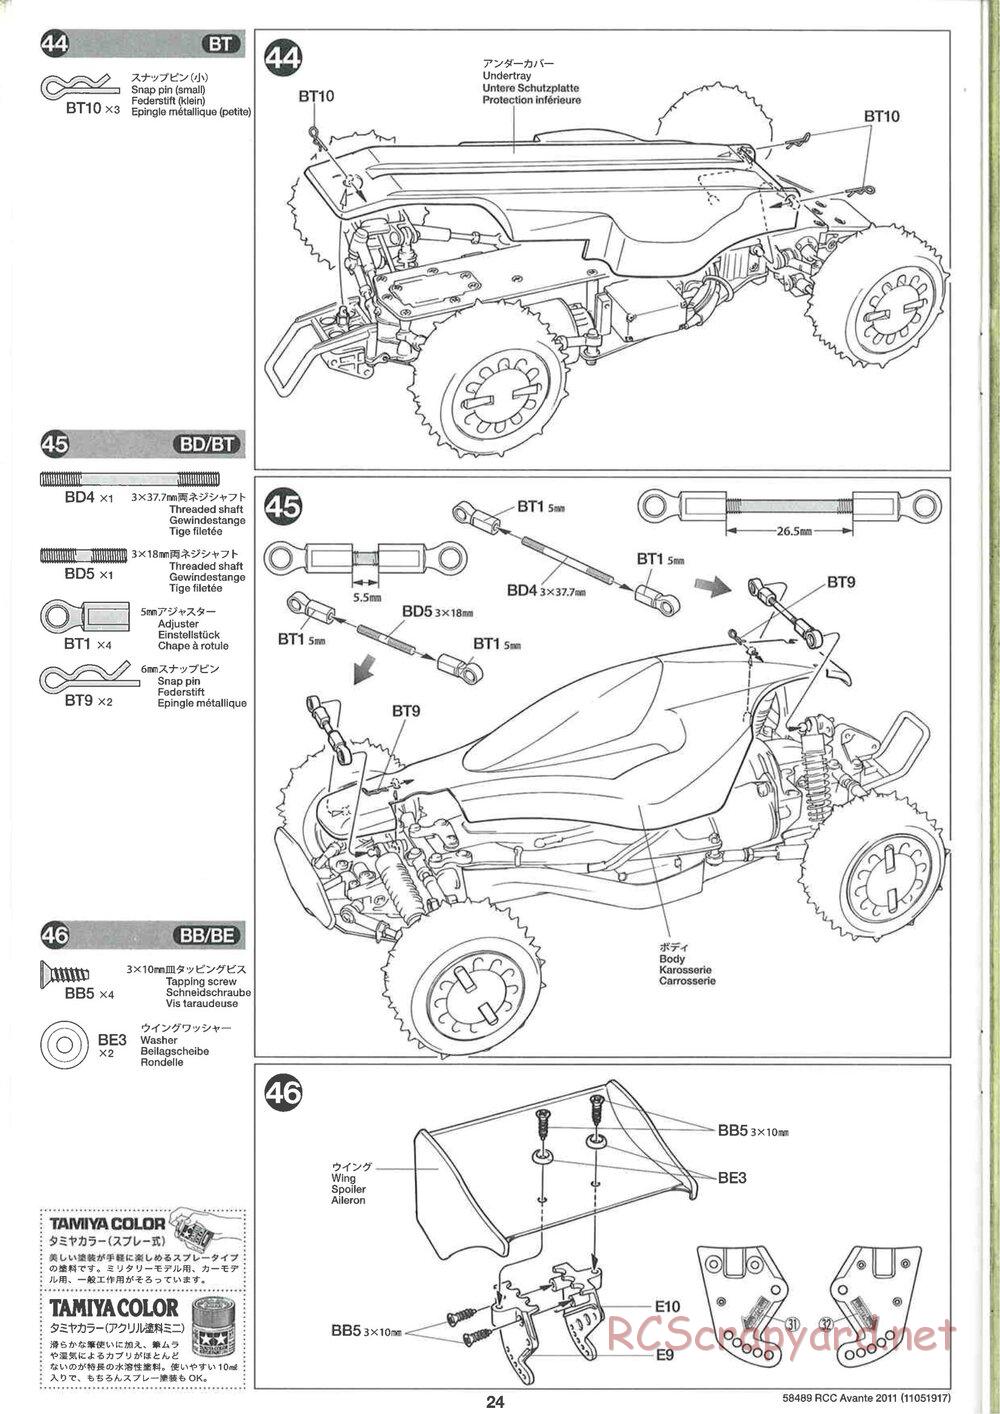 Tamiya - Avante 2011 - AV Chassis - Manual - Page 24